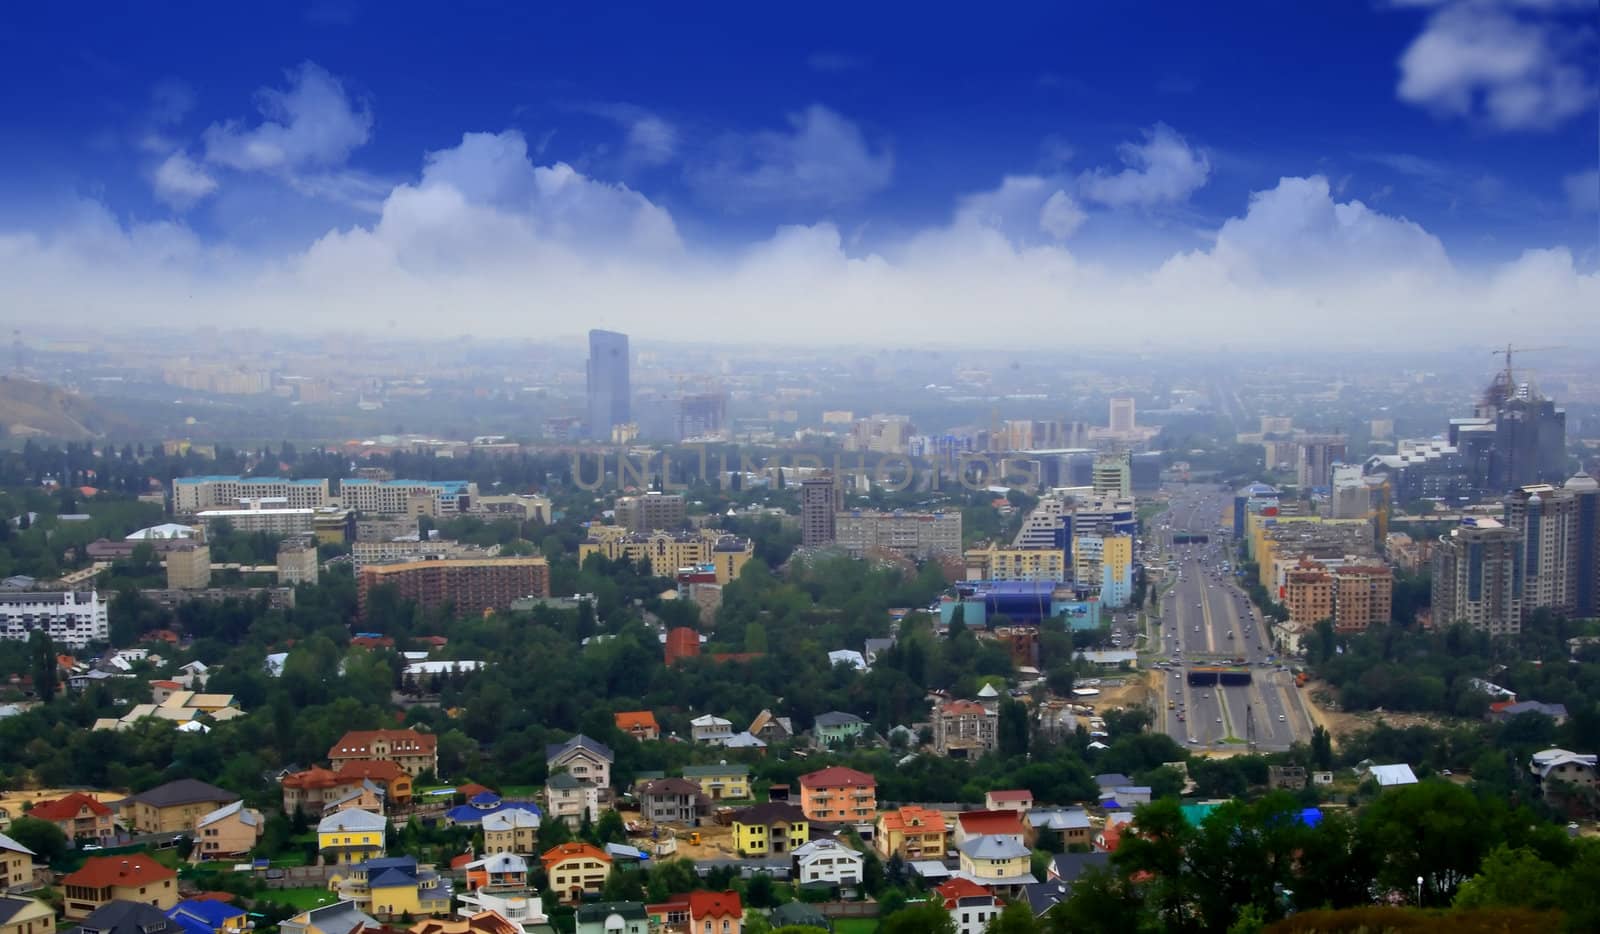 Cityscape, urban view by Kudryashka